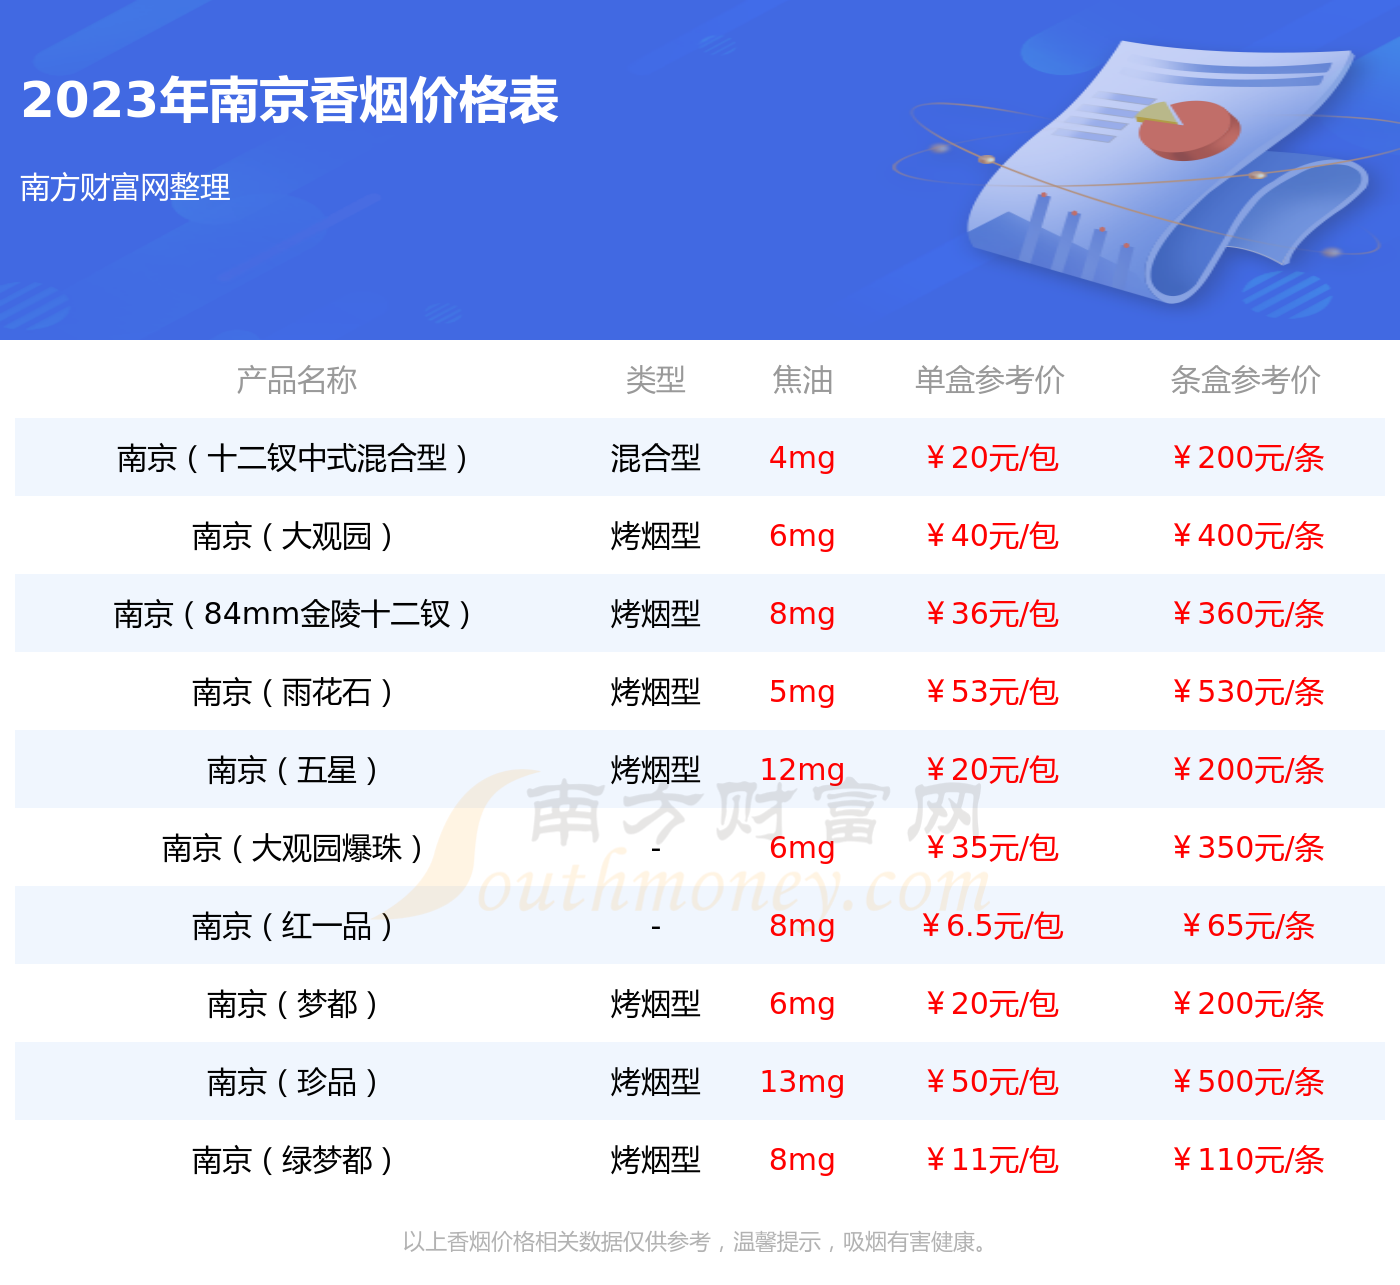 2023年南京炫赫门香烟价格表一览 - 择烟网